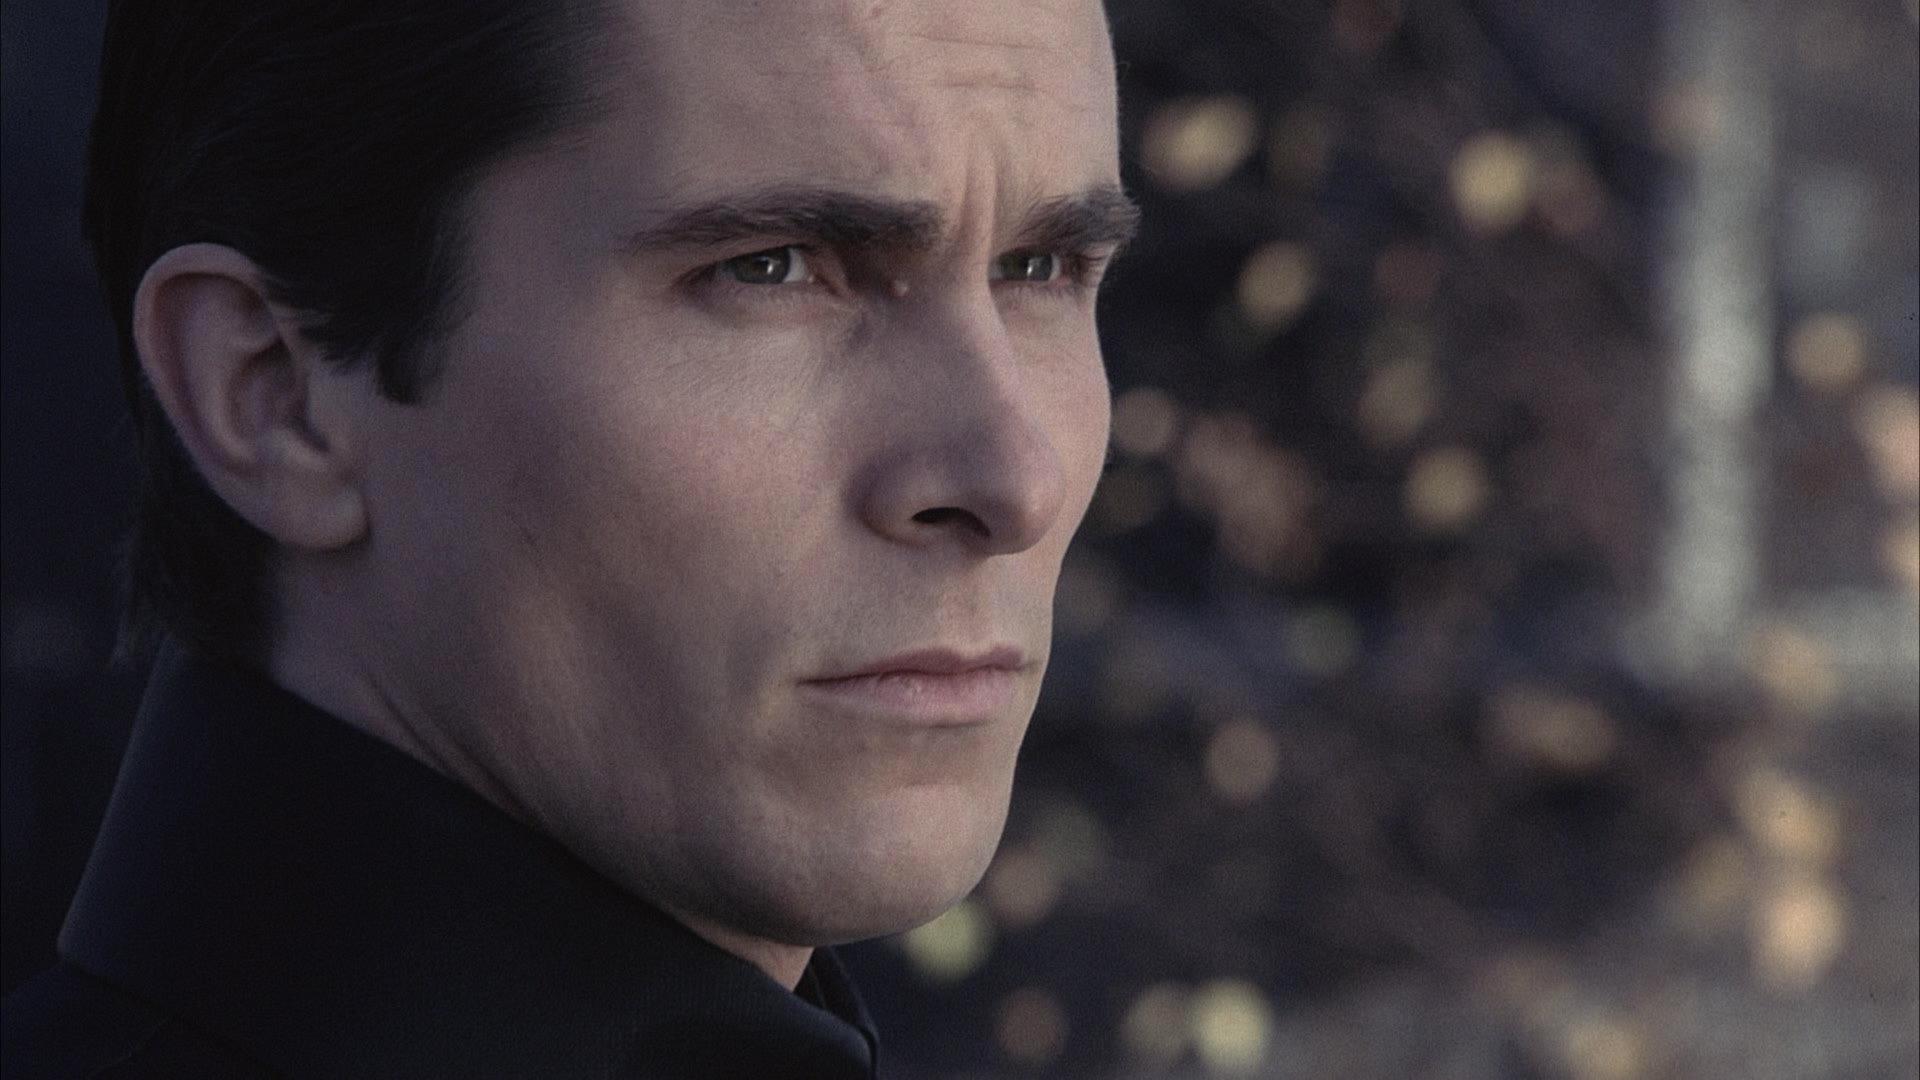 Equilibrium, Christian Bale, faces - desktop wallpaper